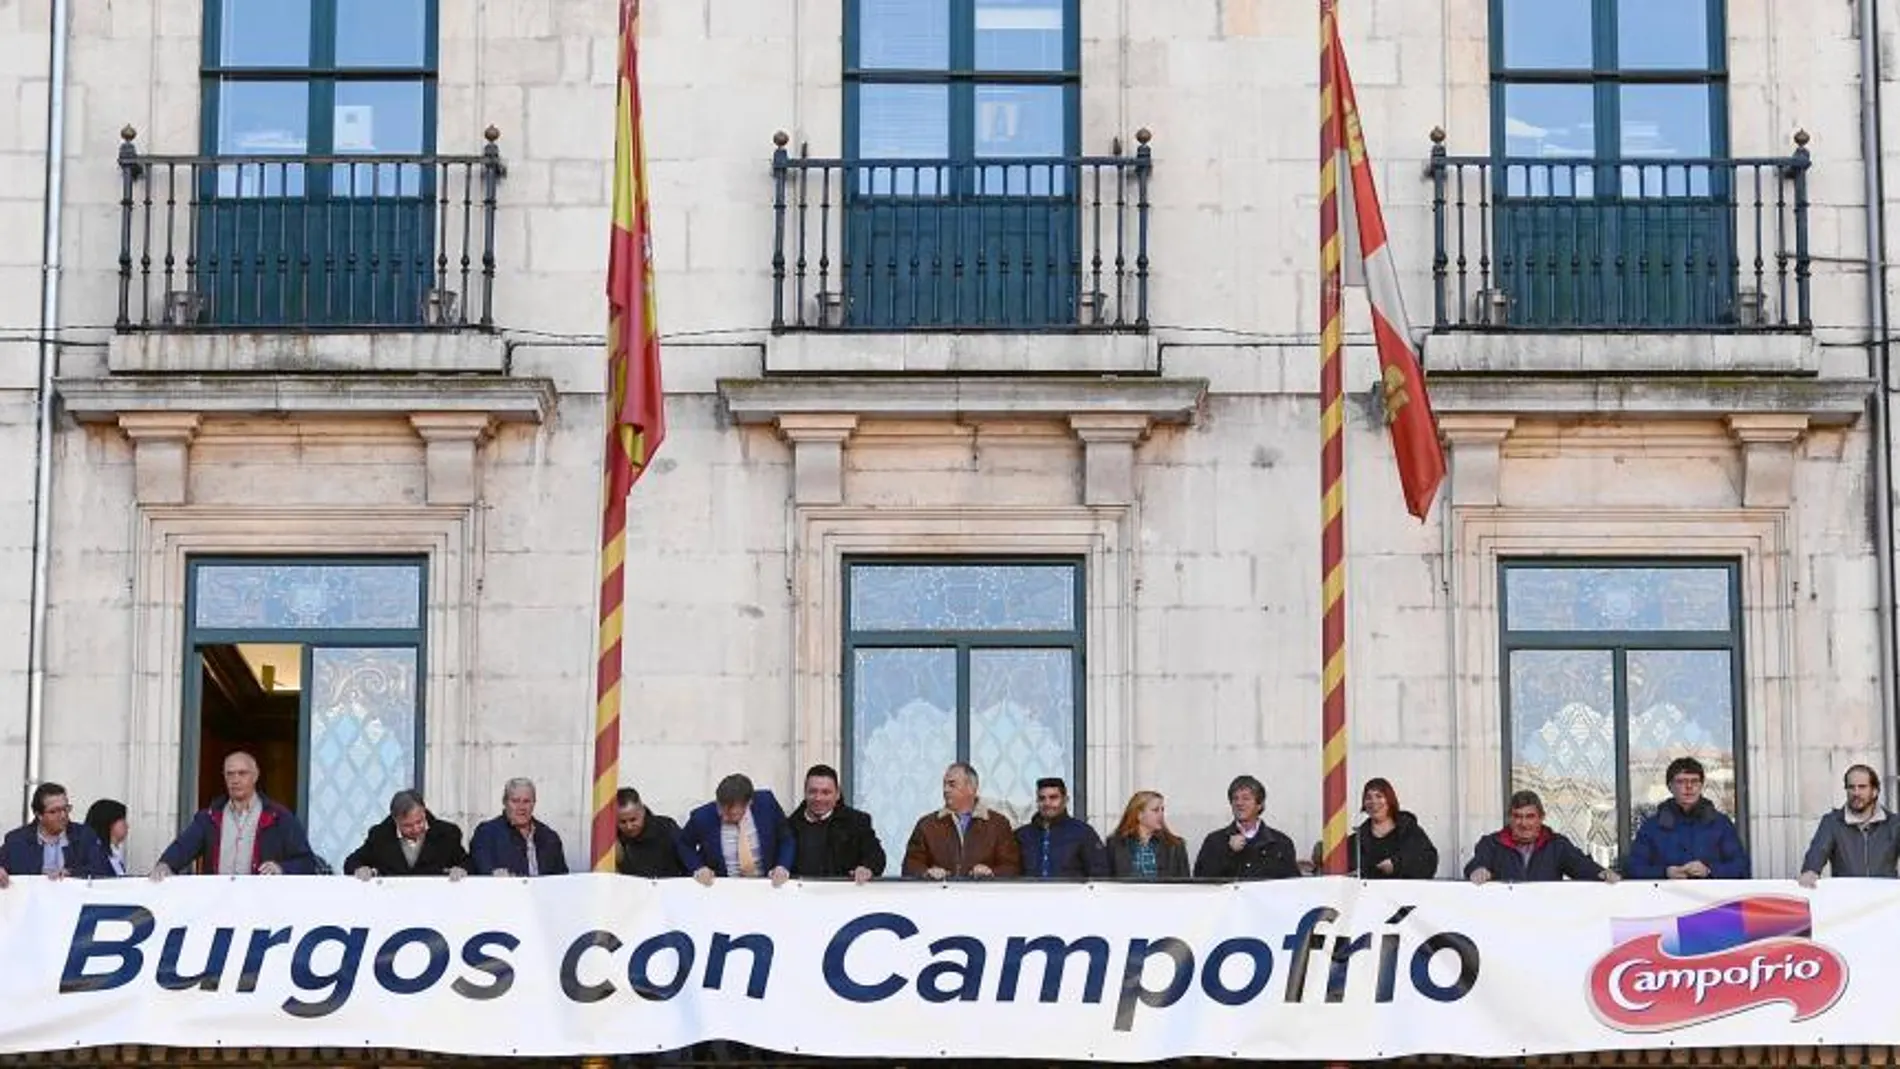 El alcalde de Burgos, Javier Lacalle, y los portavoces de los grupos municipales colocan una pancarta en el balcón del Ayuntamiento de apoyo a la reapertura de la nueva Campofrío, con motivo del segundo aniversario del incendio